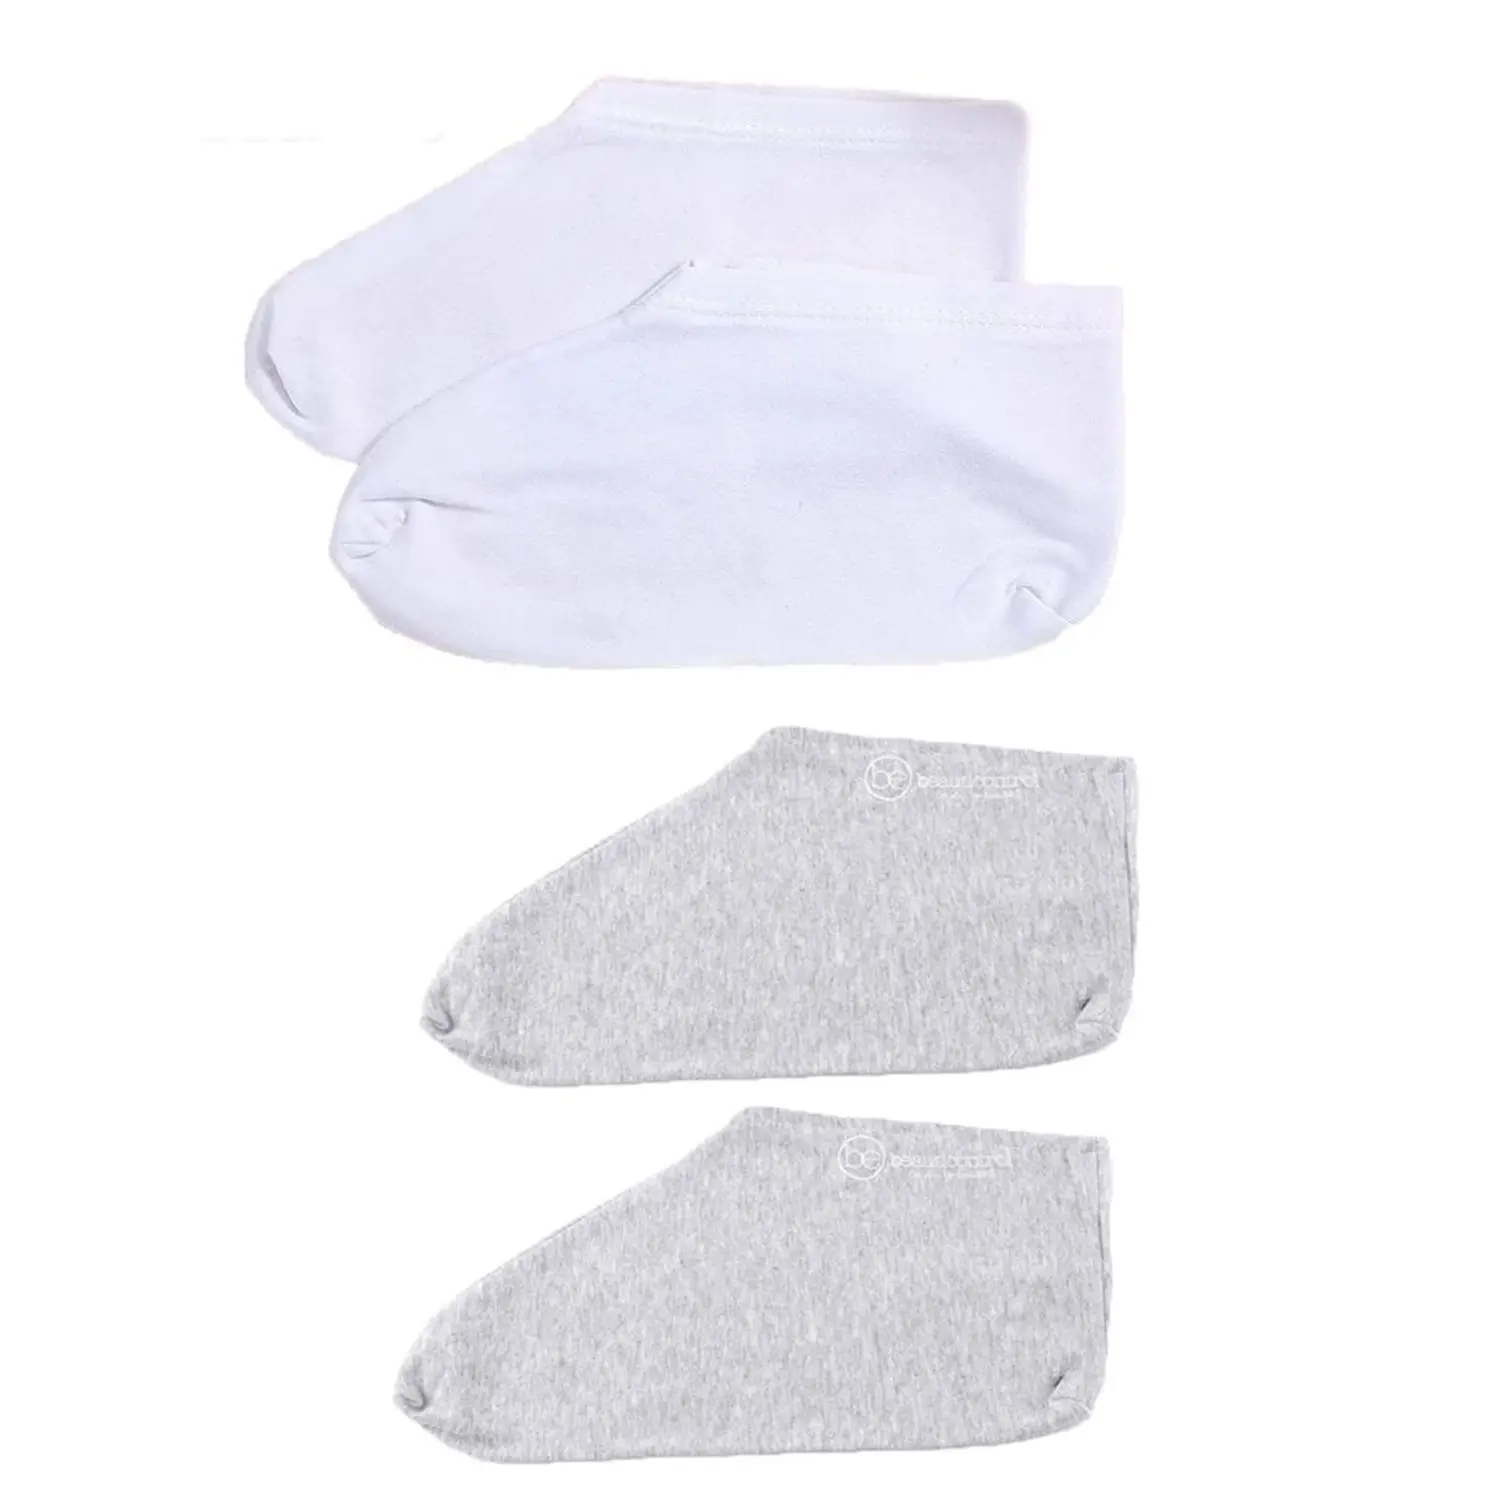 

2Pairs Rough Skin Soft for Skin Care Dry Feet Moisturizing Socks Overnight Moisture Spa Socks White Grey